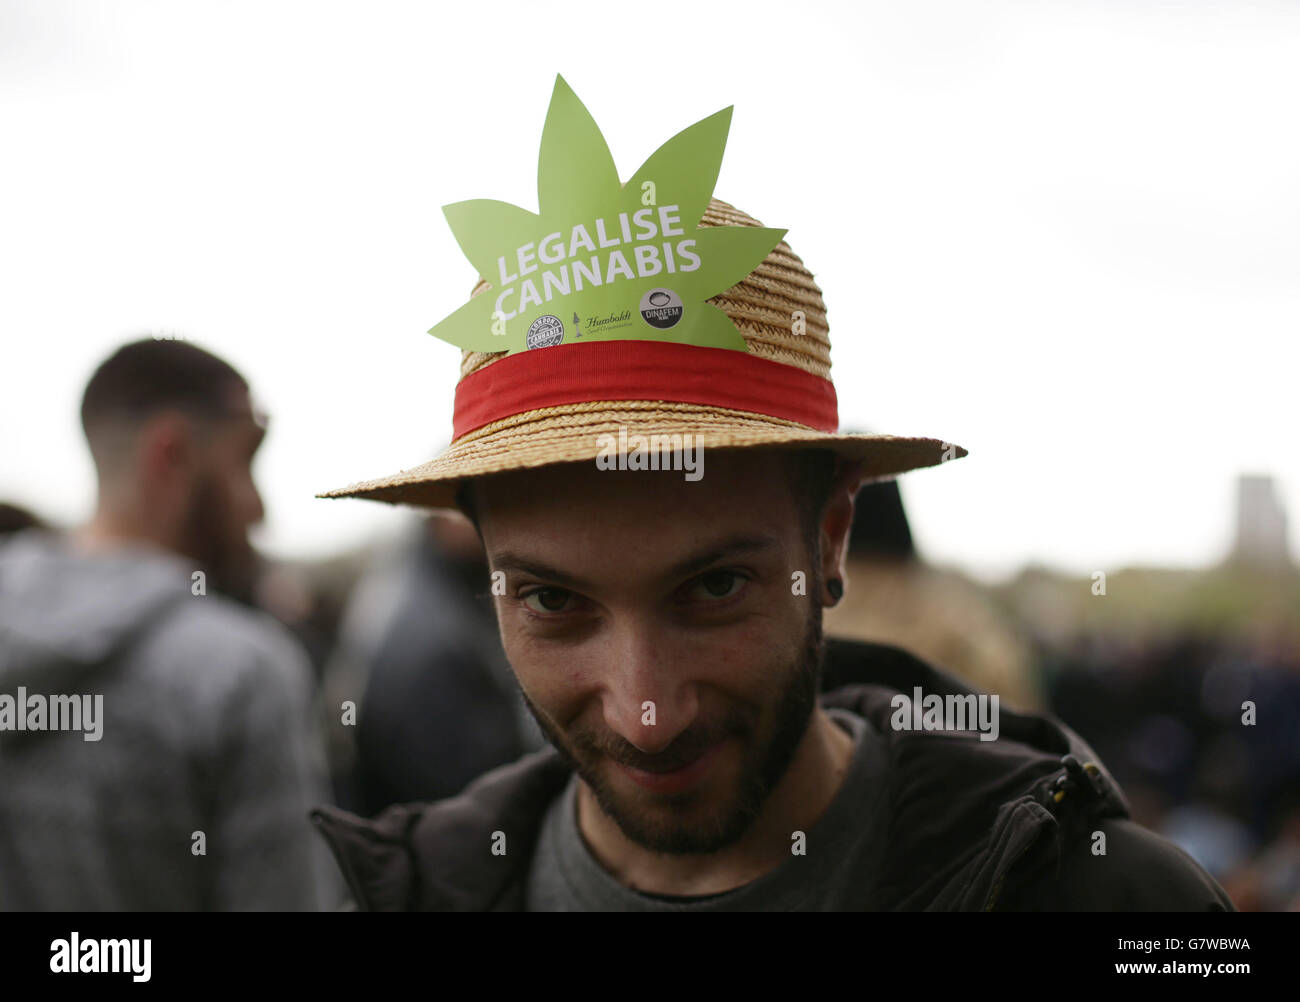 Un événement pro-cannabis '420 Celebration' organisé par NORML-UK, un groupe cherchant à réformer les lois britanniques sur le cannabis - au Speakers Corner à Hyde Park, dans le centre de Londres. Banque D'Images